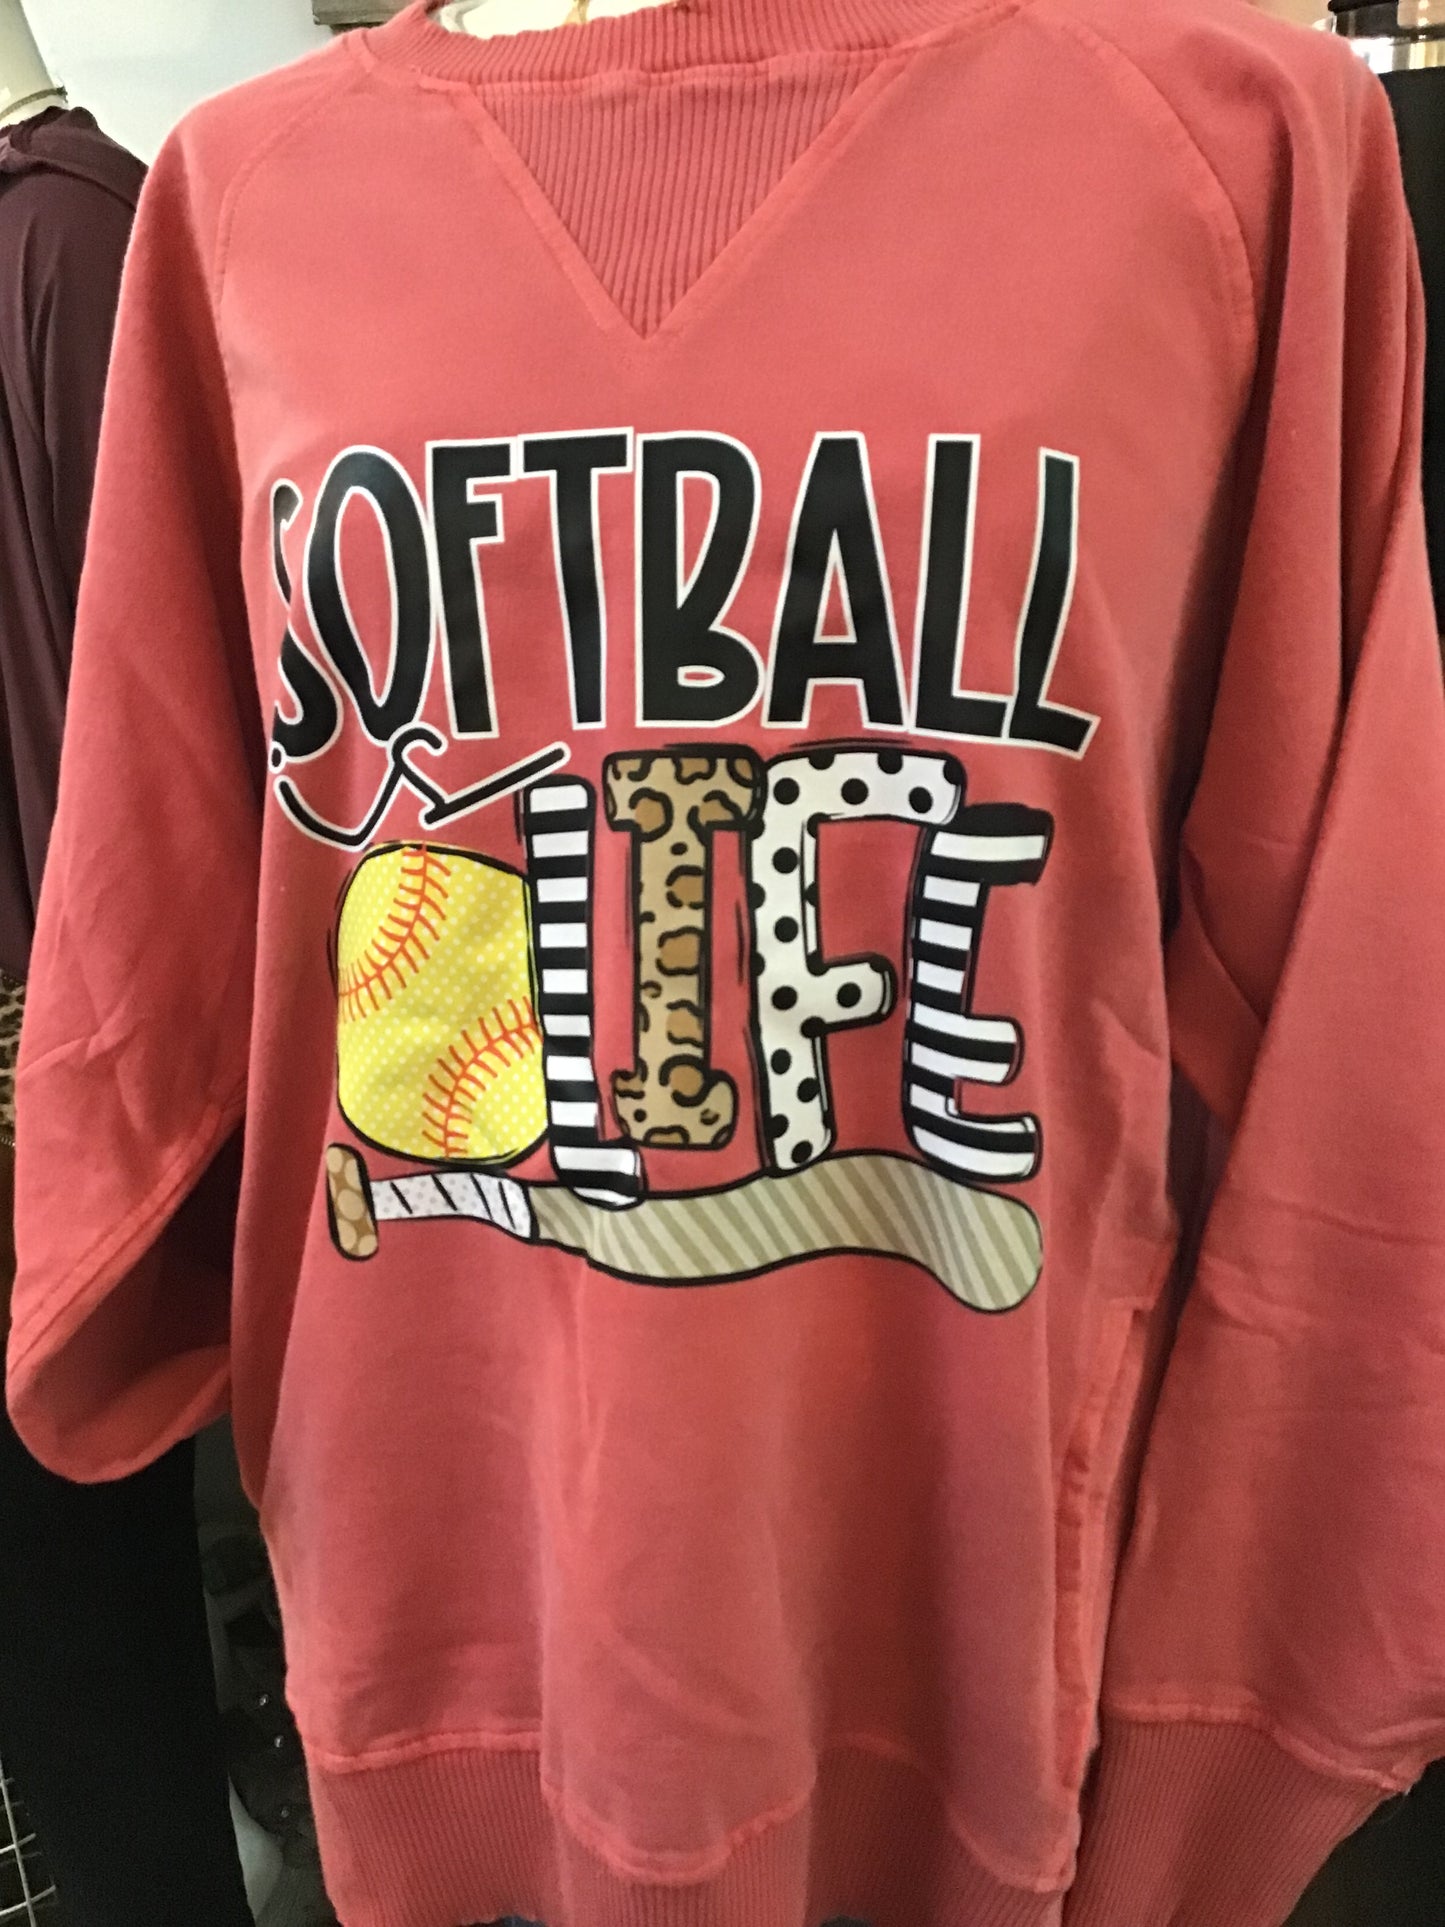 Softball is Life Sweatshirt